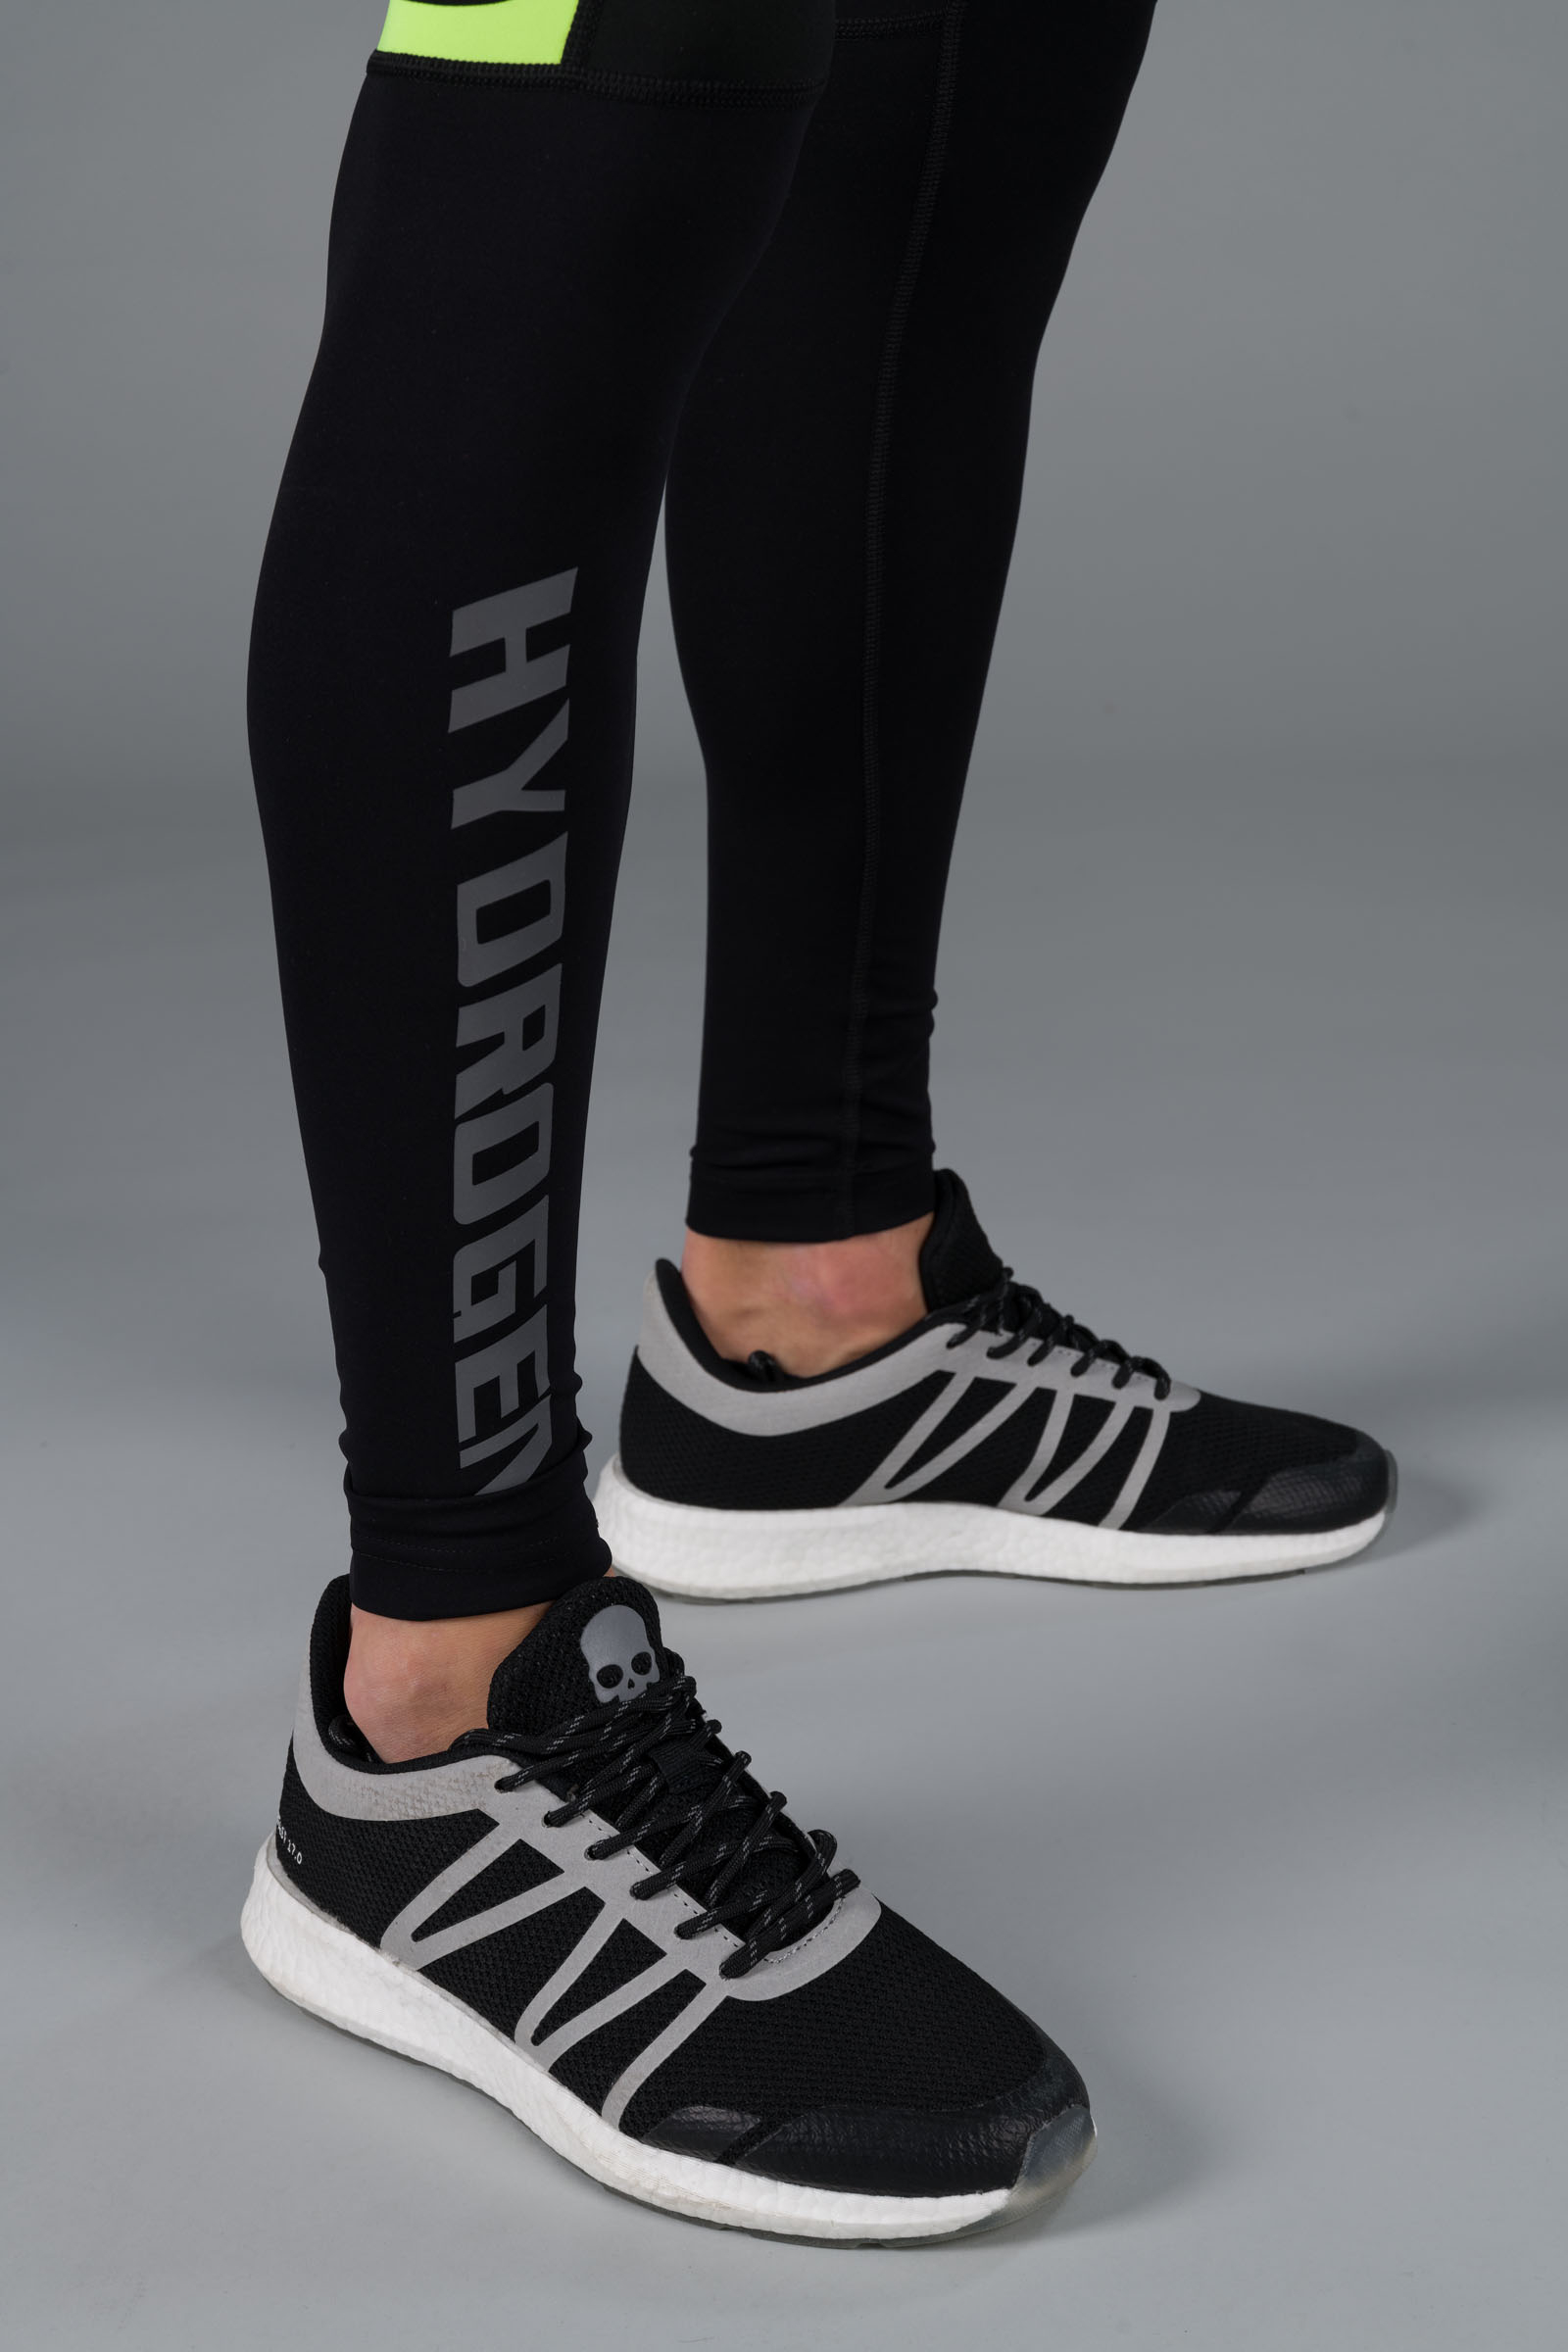 CAMO HYDROGEN LEGGINGS - BLACK,FLUO YELLOW - Abbigliamento sportivo | Hydrogen